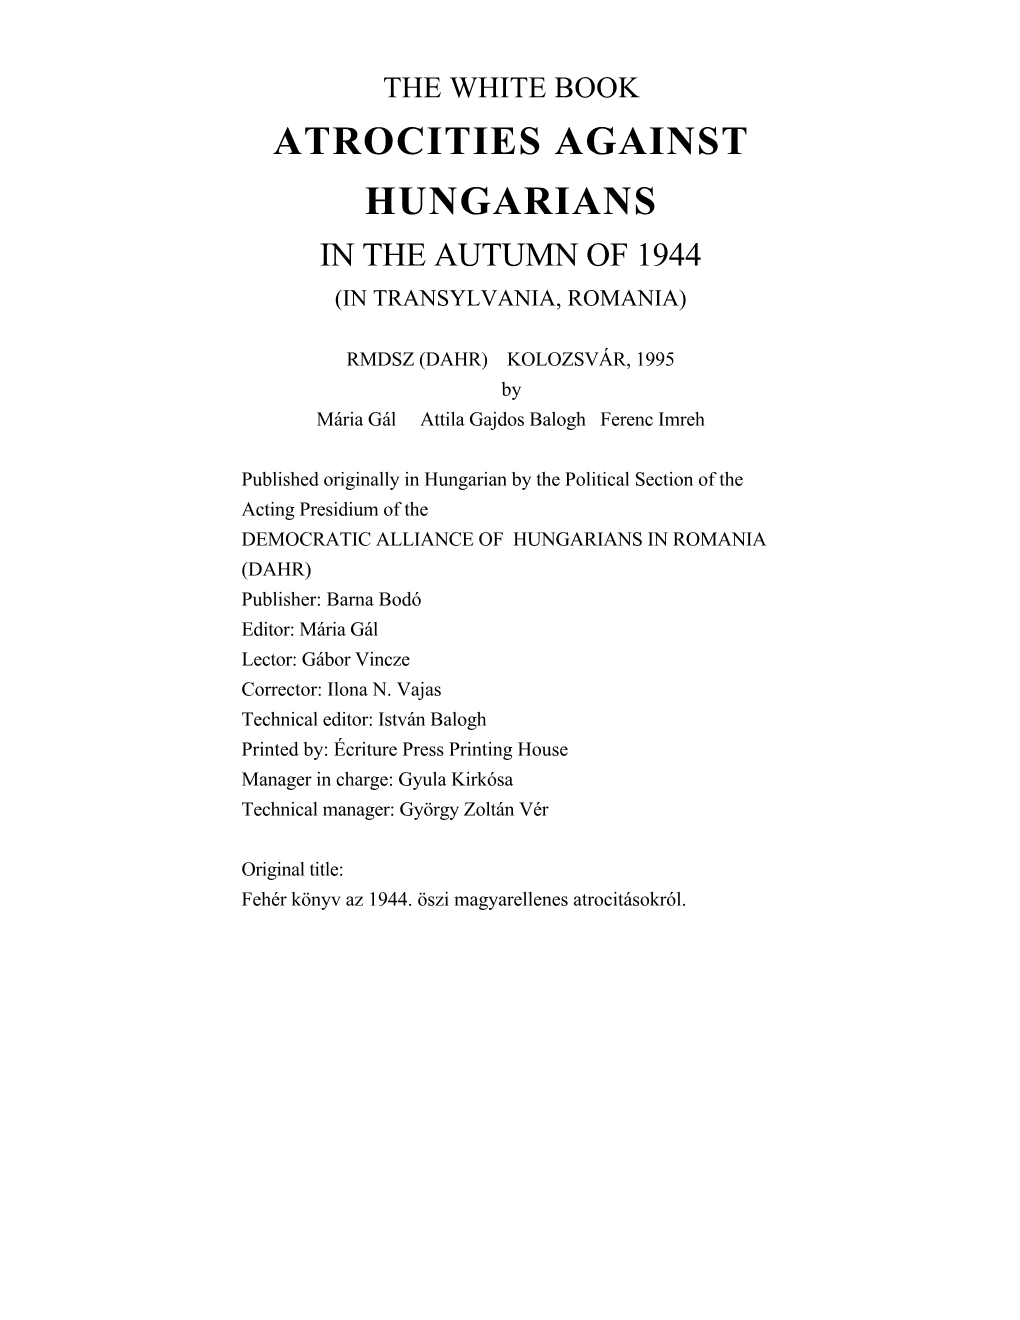 Atrocities Against Hungarians in Transylvania-Romania in The